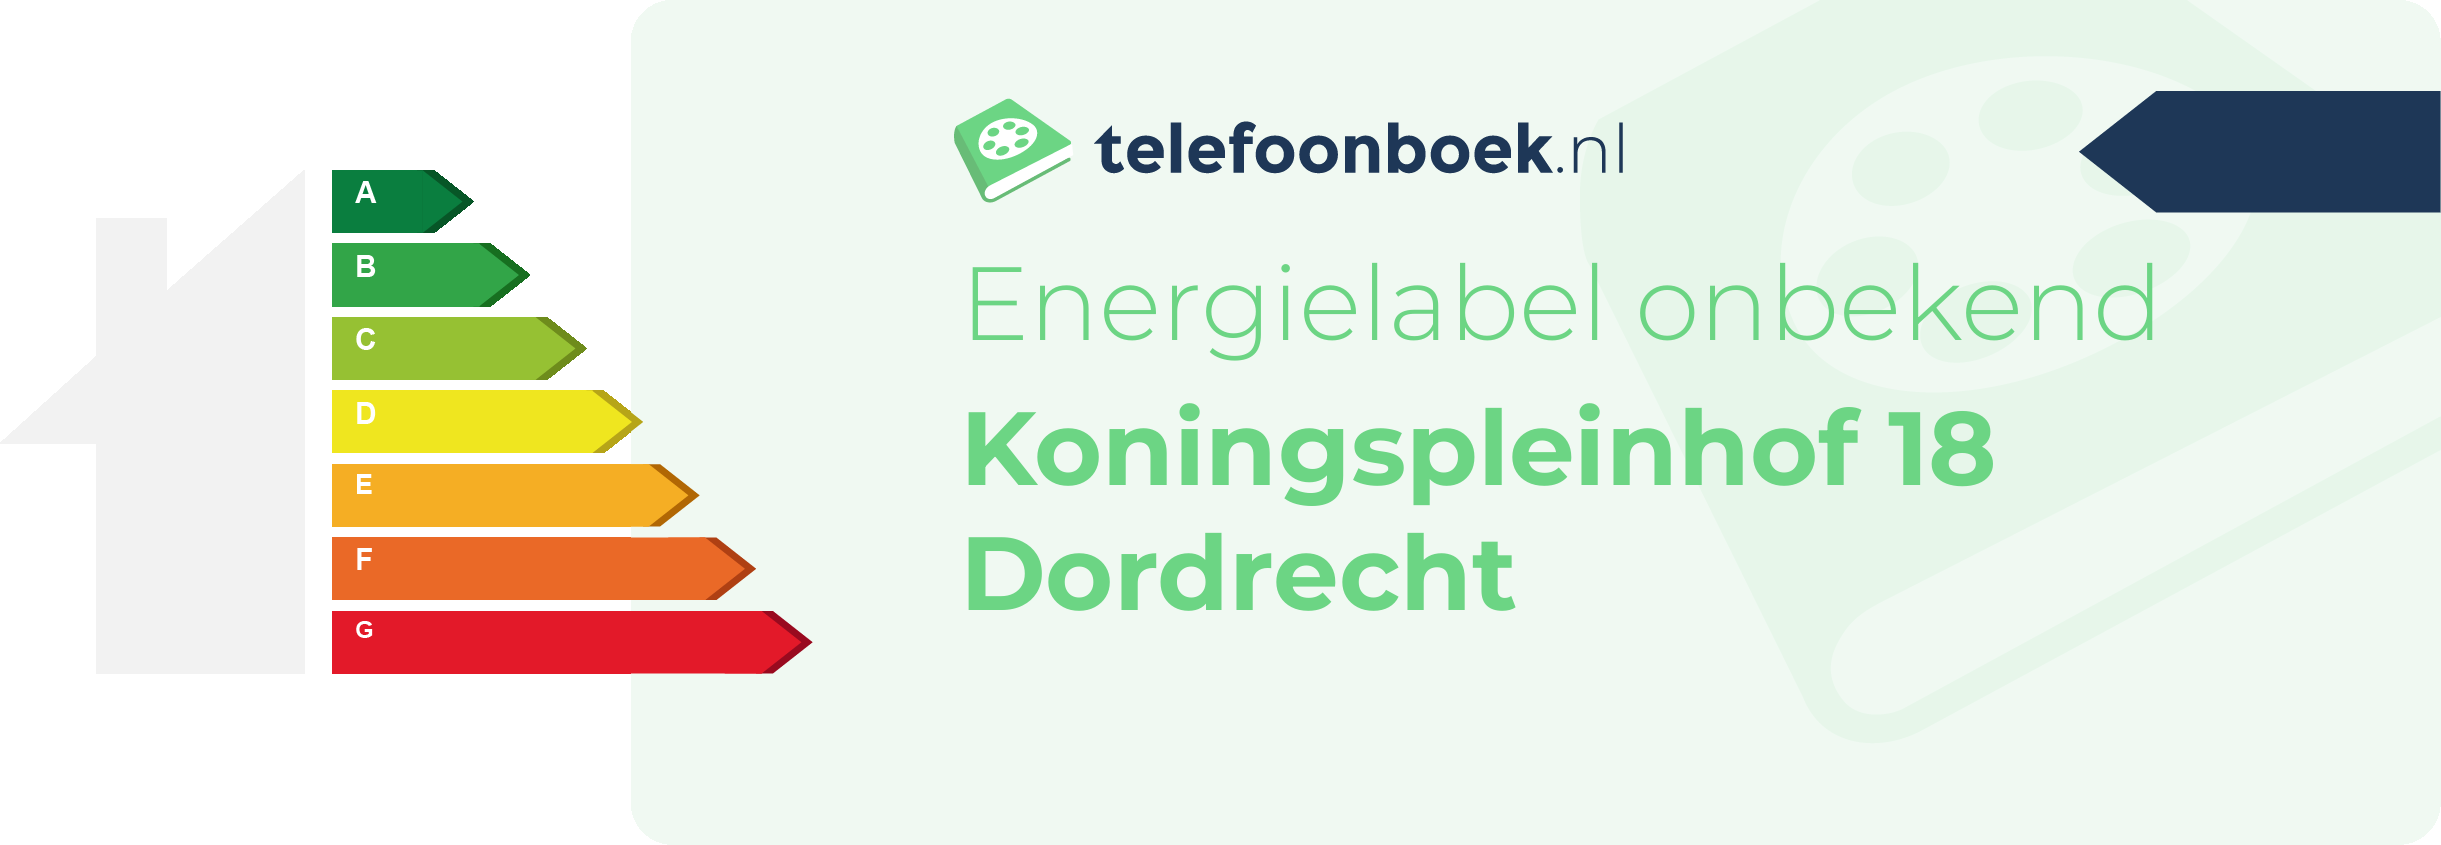 Energielabel Koningspleinhof 18 Dordrecht